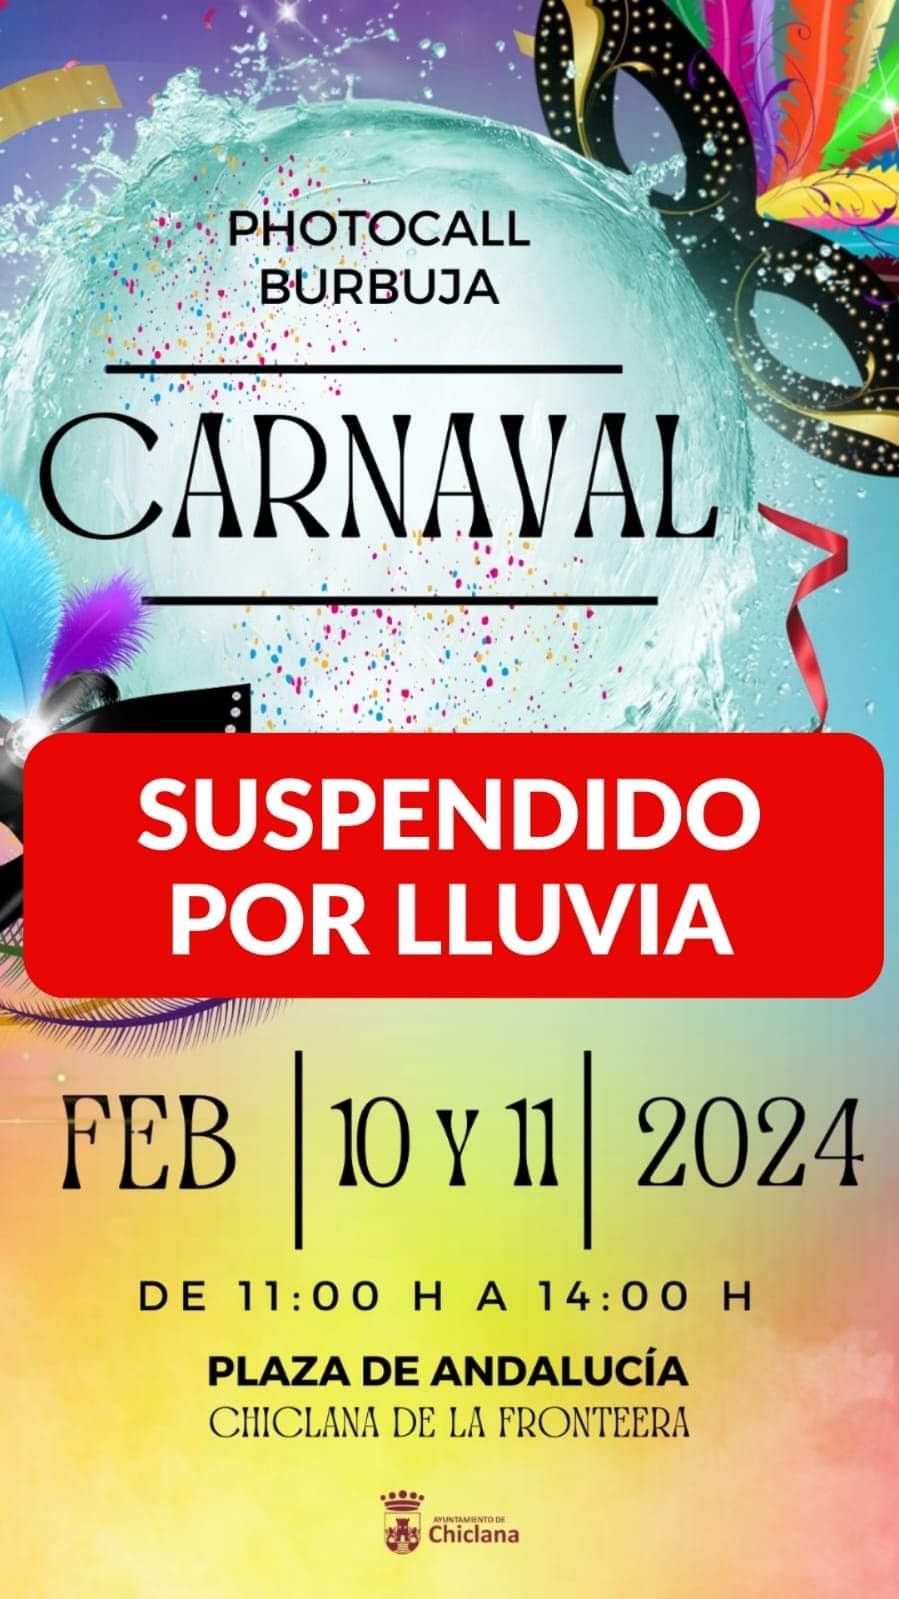 Chiclana on X: El photocall Burbuja de Carnaval, previsto en la